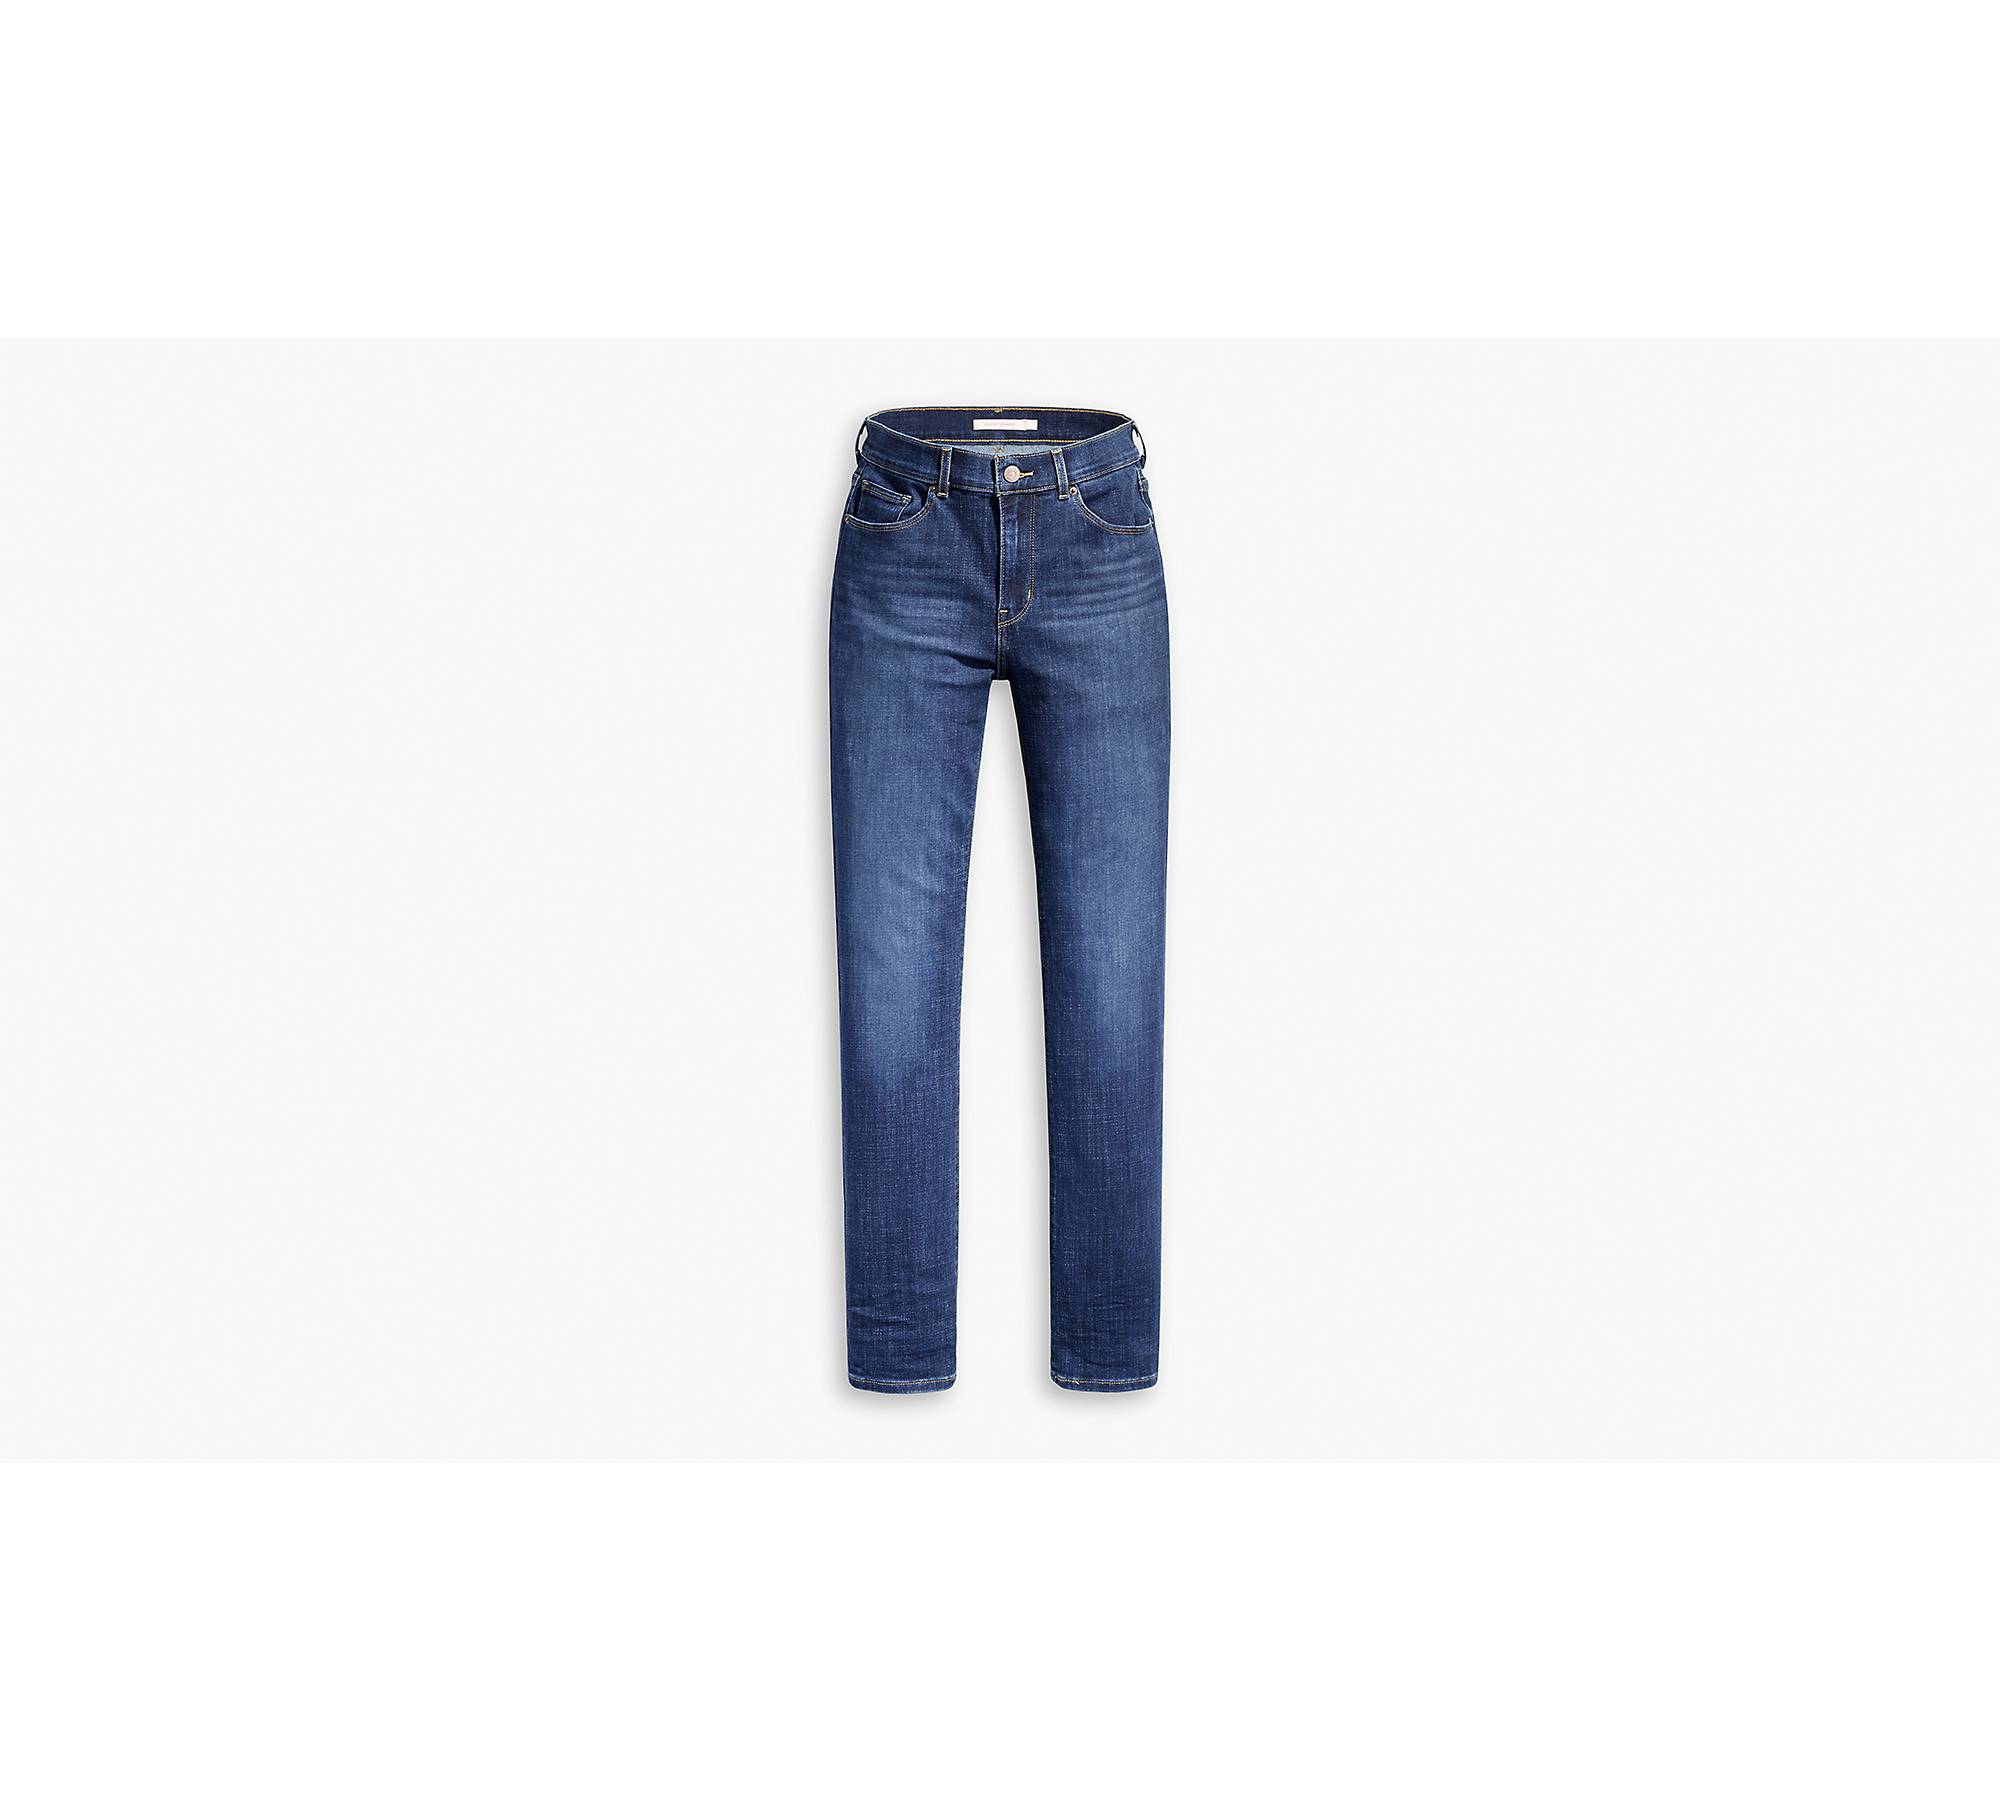 Vintage LEVIS 414 Classic Straight Jeans Women's Dark Blue Levi